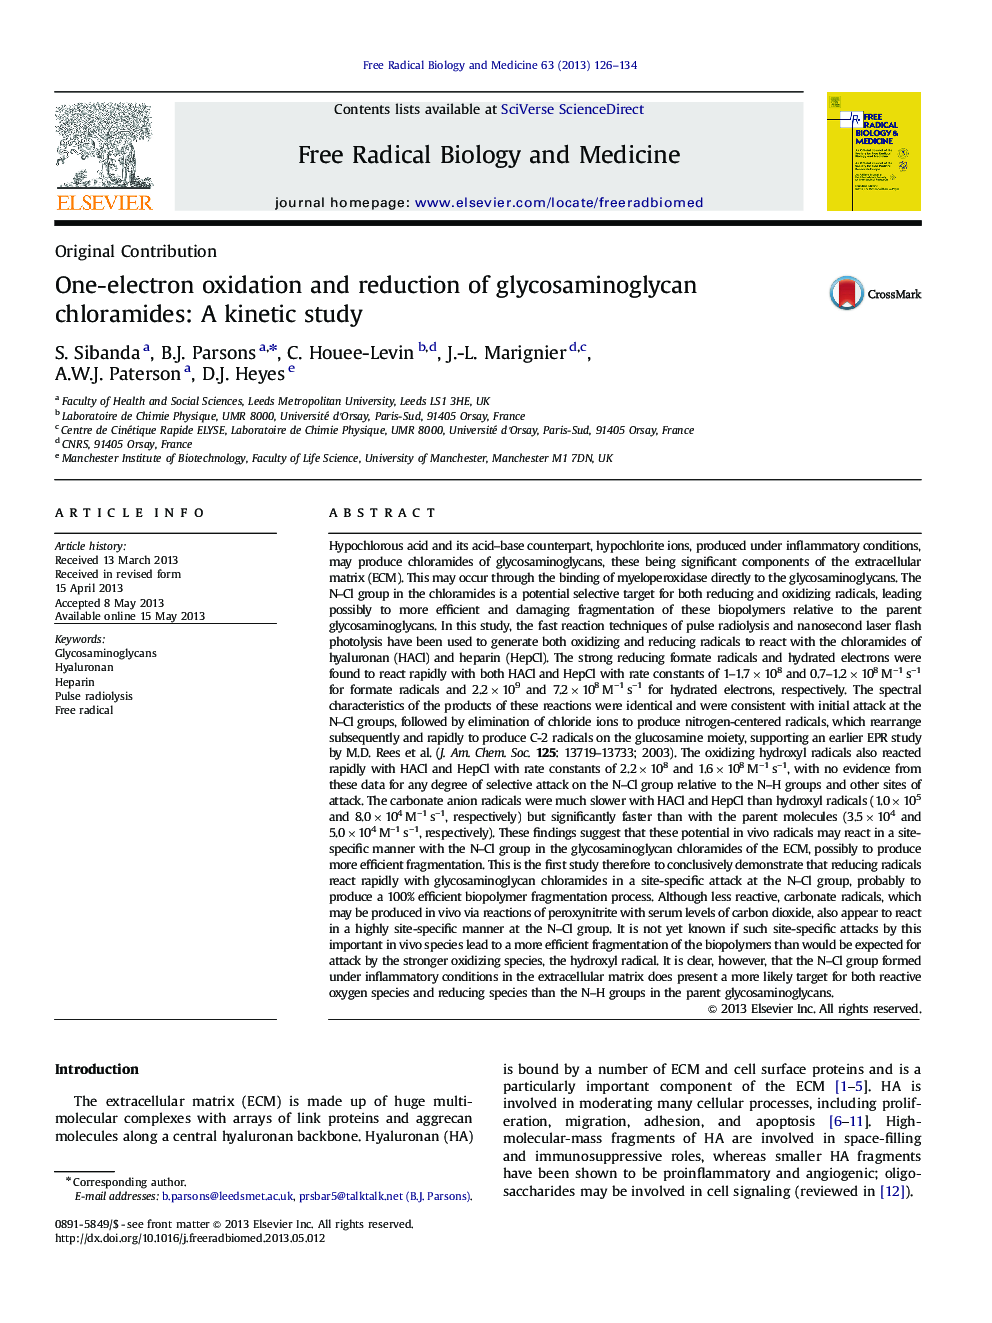 اکسیداسیون یک الکترون و کاهش کلرامید های گلیکواسامینوگلیکان: یک مطالعه سینتیکی 